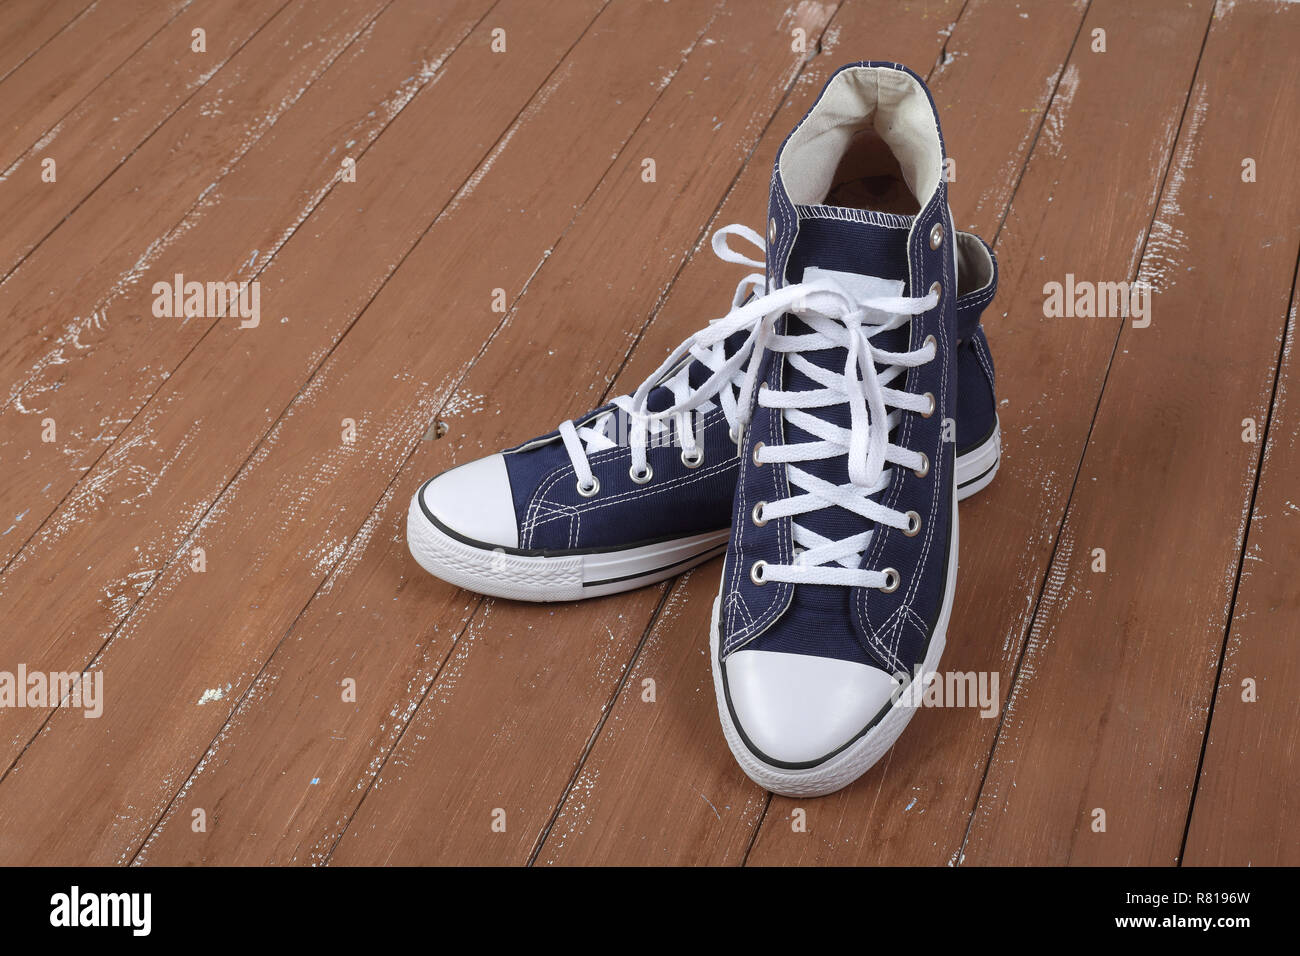 Vêtements, chaussures et accessoires - bleu paire libre gumshoes on a wooden background Banque D'Images